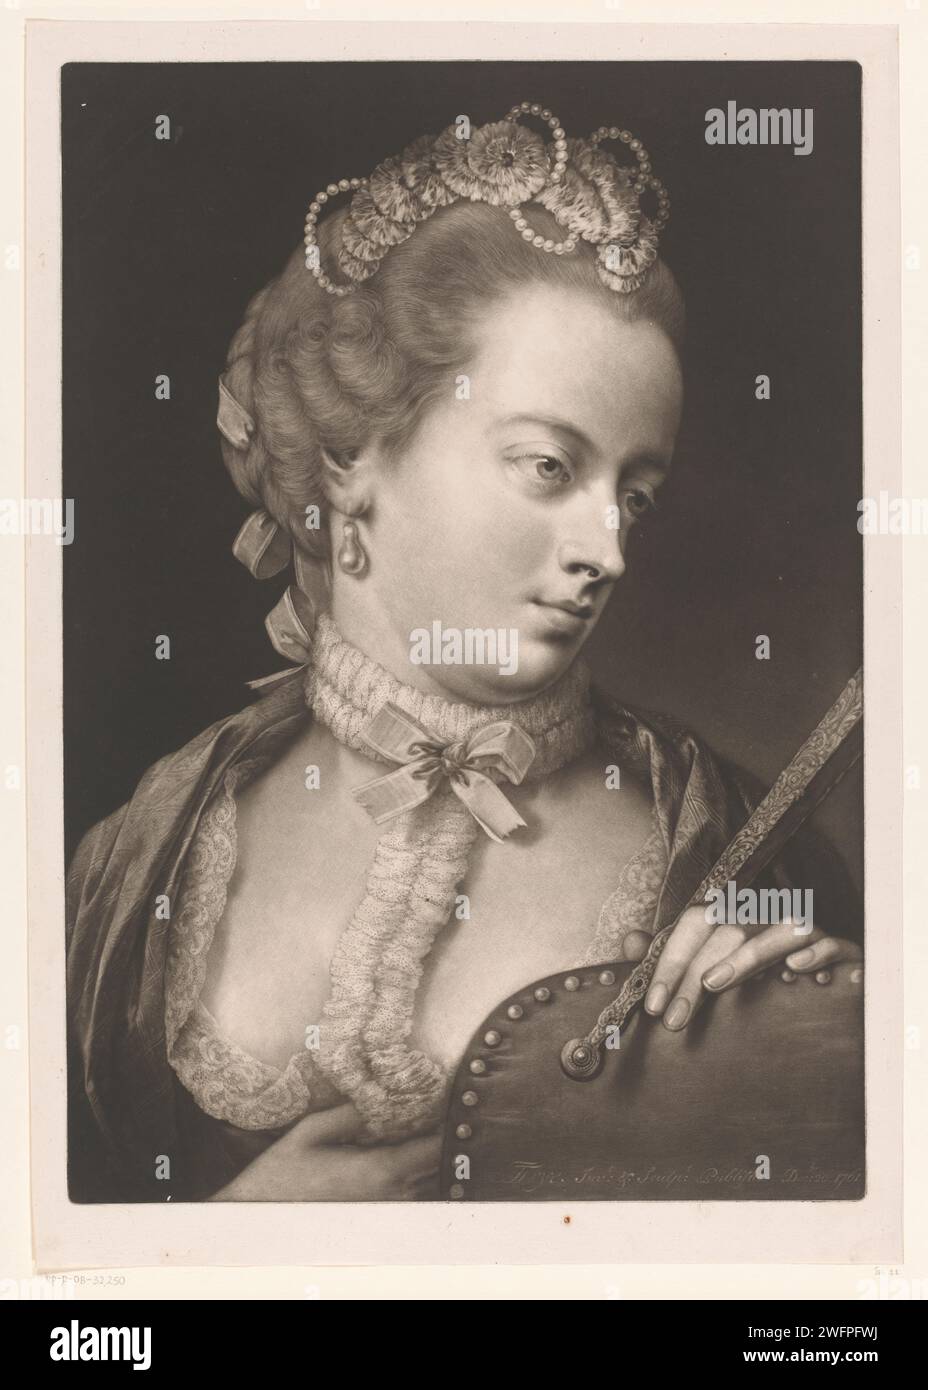 Femme avec un col en dentelle, un diadème et un éventail, Thomas Frye, 1760 - 1762 print London paper diadem, tiare. dentelle. ventilateur. femme adulte Banque D'Images